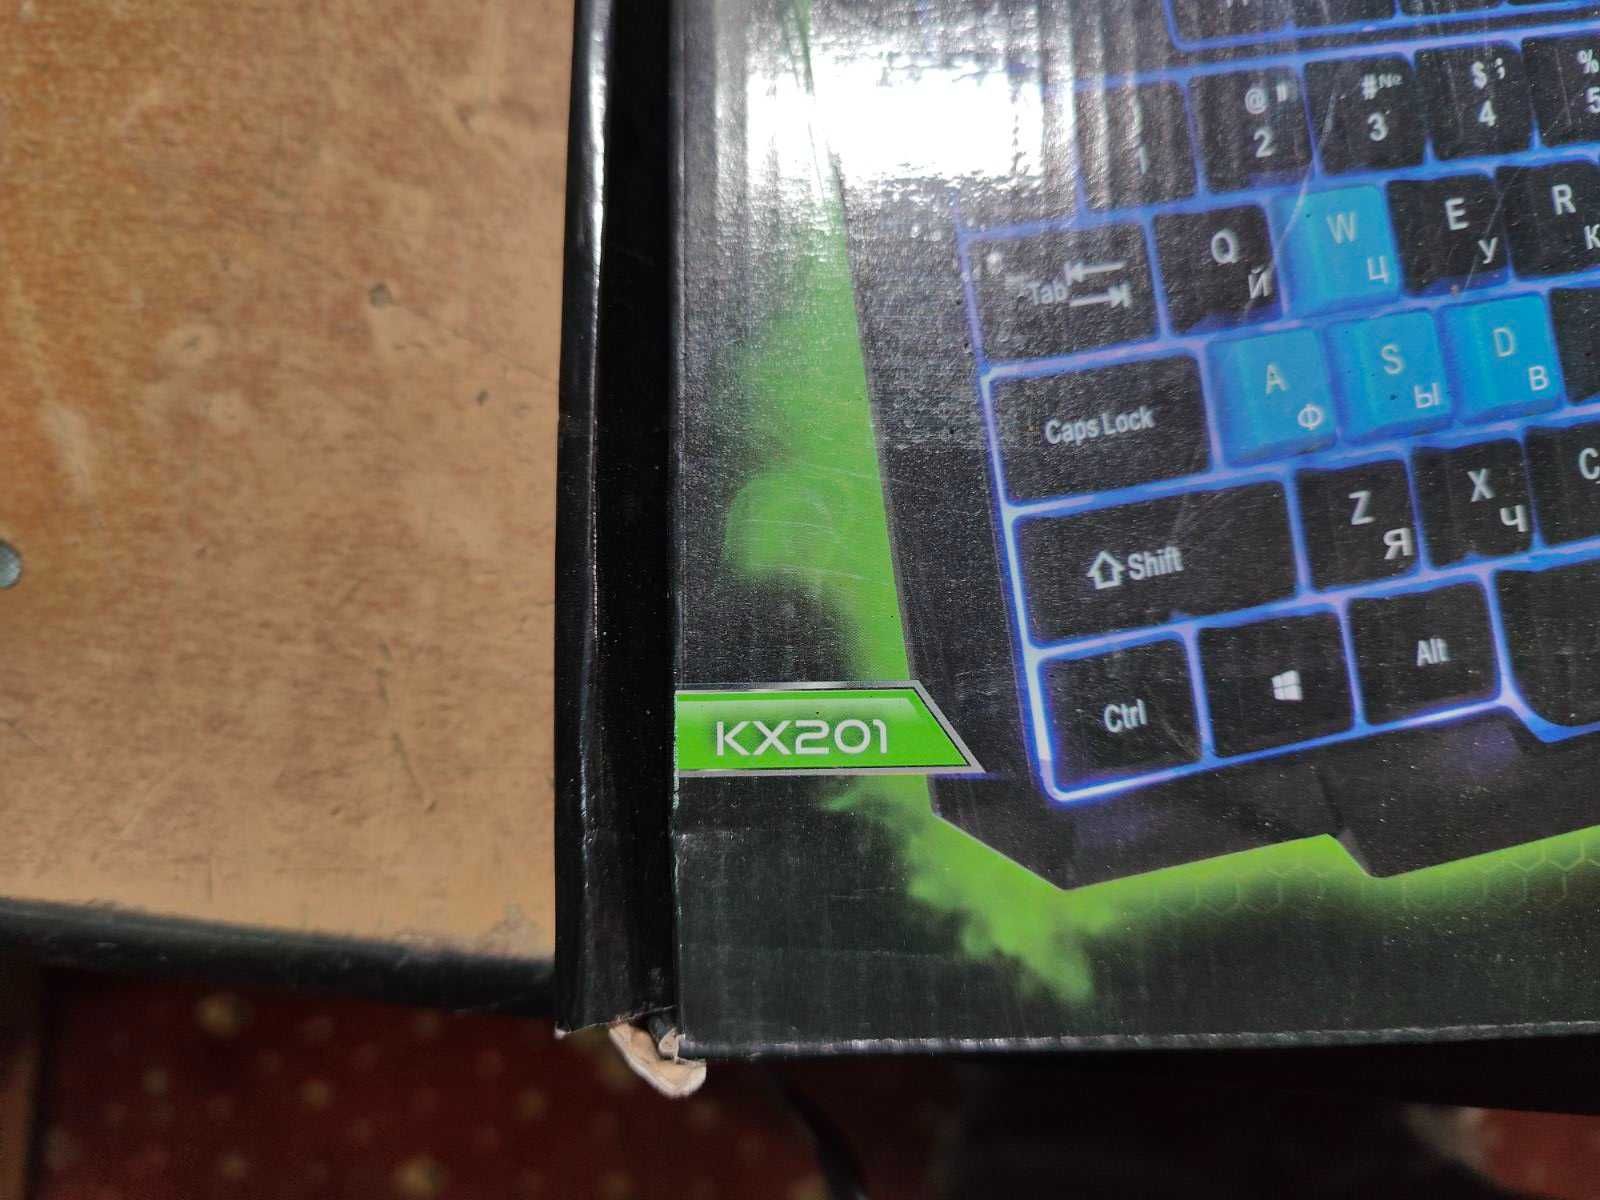 Игровая клавиатура Esperanza EGK201 KX201 USB